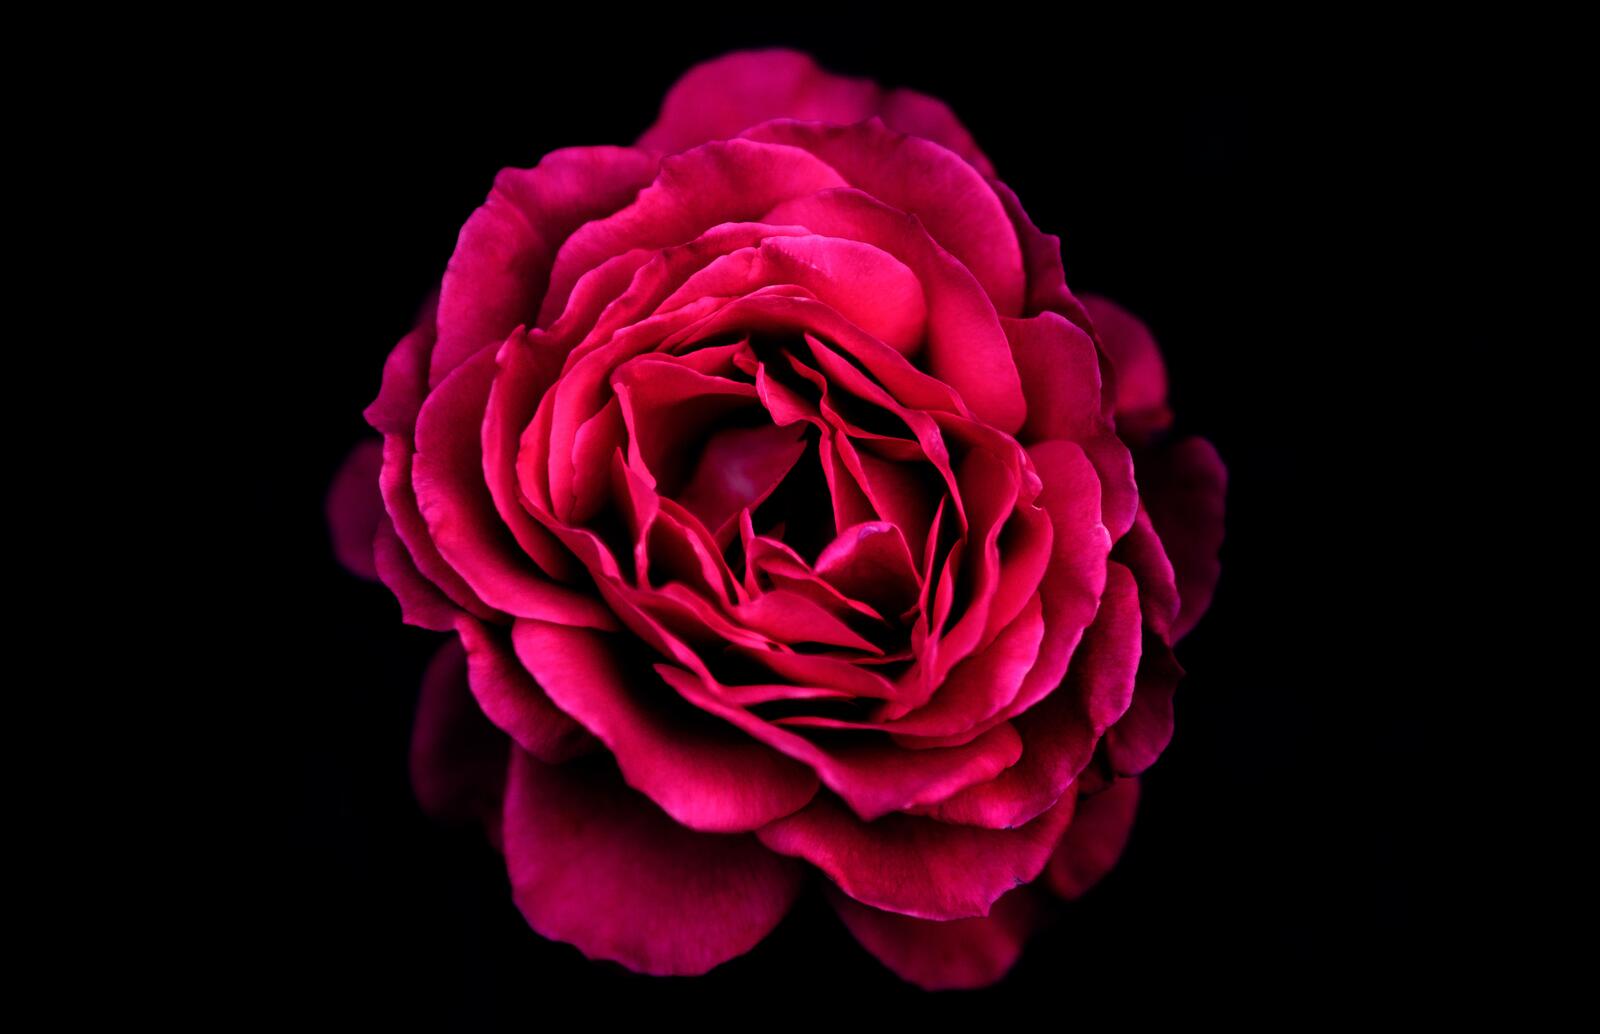 Бесплатное фото Розовый бутон цветка флорибунда на черном фоне